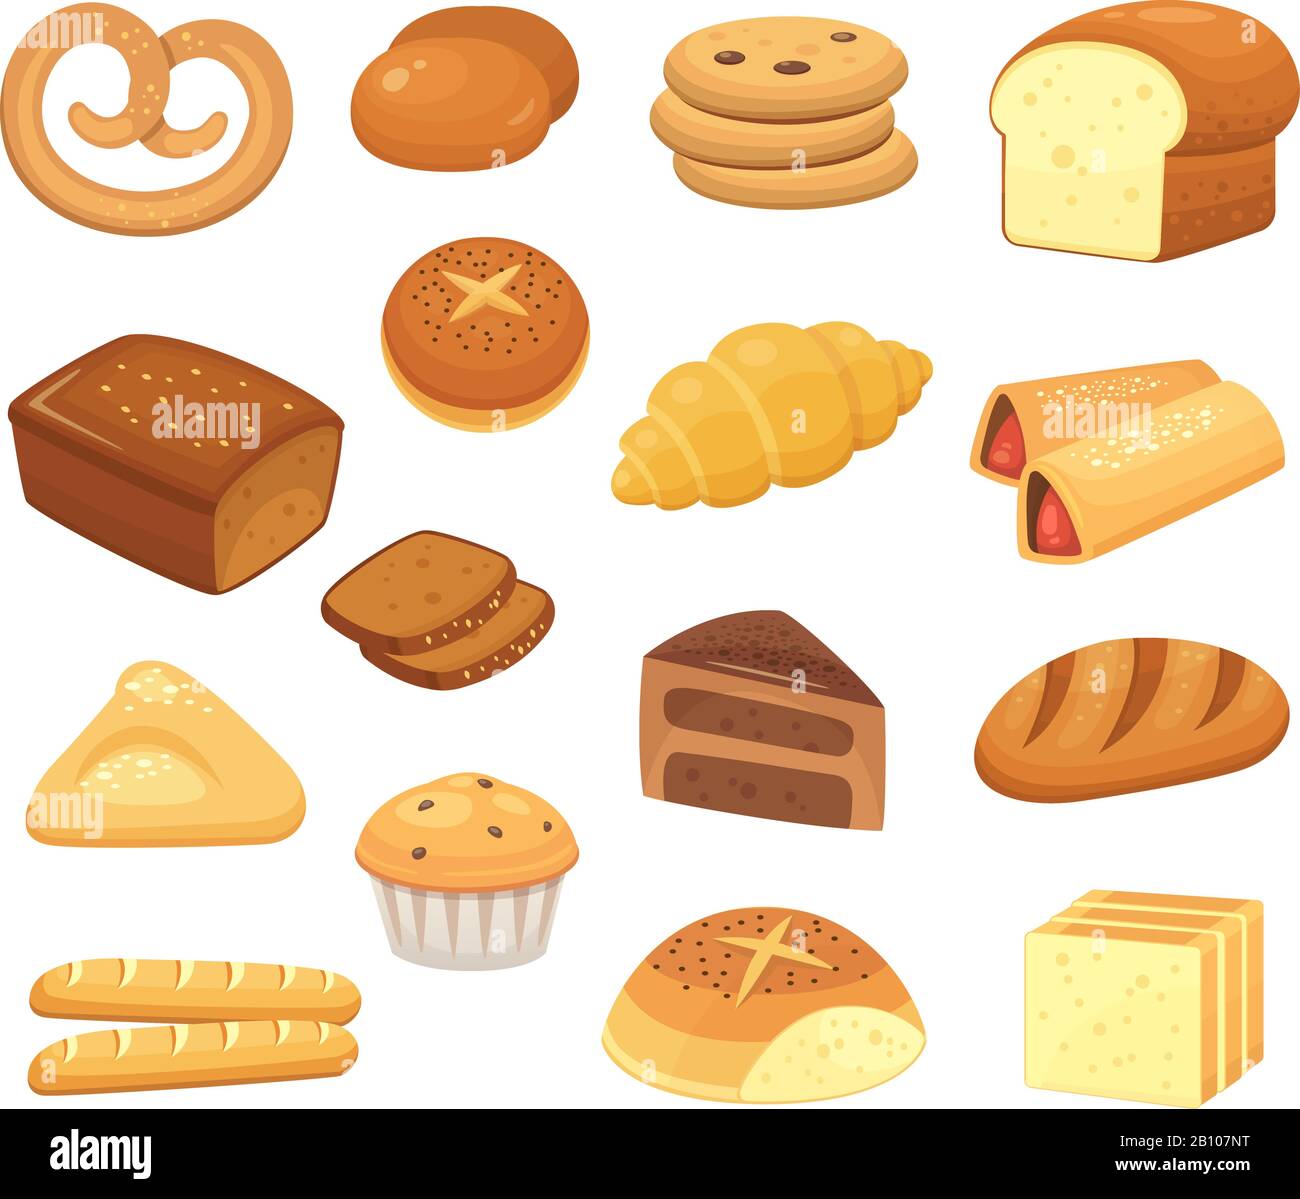 Cartoon-Brot-Symbol. Brot und Brötchen. Französisches Frühstück, Toast und süße Kuchenscheibe. Vektorsymbole für Backwaren festgelegt Stock Vektor